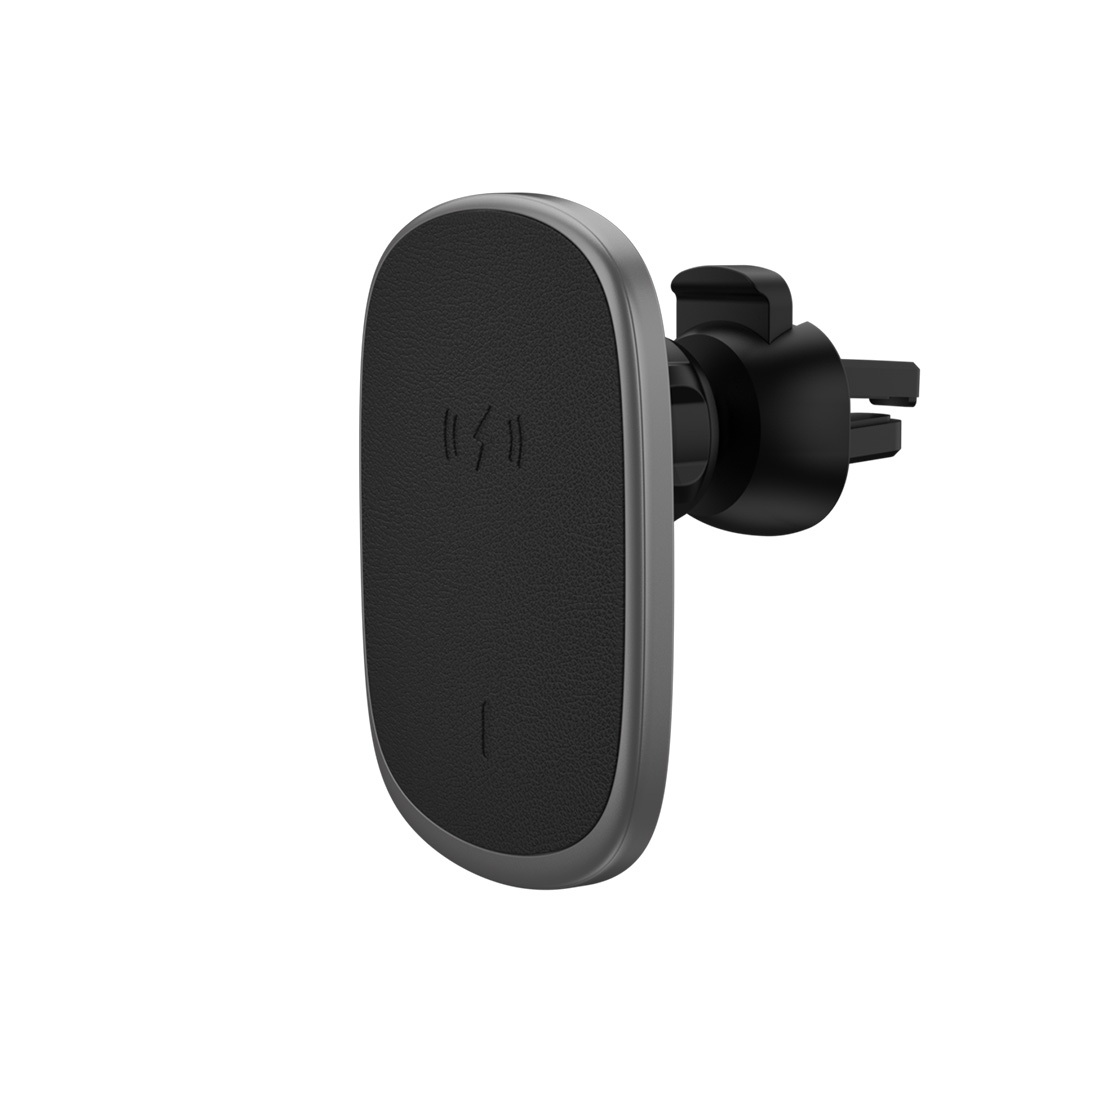 Magsafing वायरलेस कार चार्जर 15W Qi फास्ट कार माउन्ट फोन होल्डर चुम्बकीय एयर भेन्ट 360 रोटेशन उपयुक्त